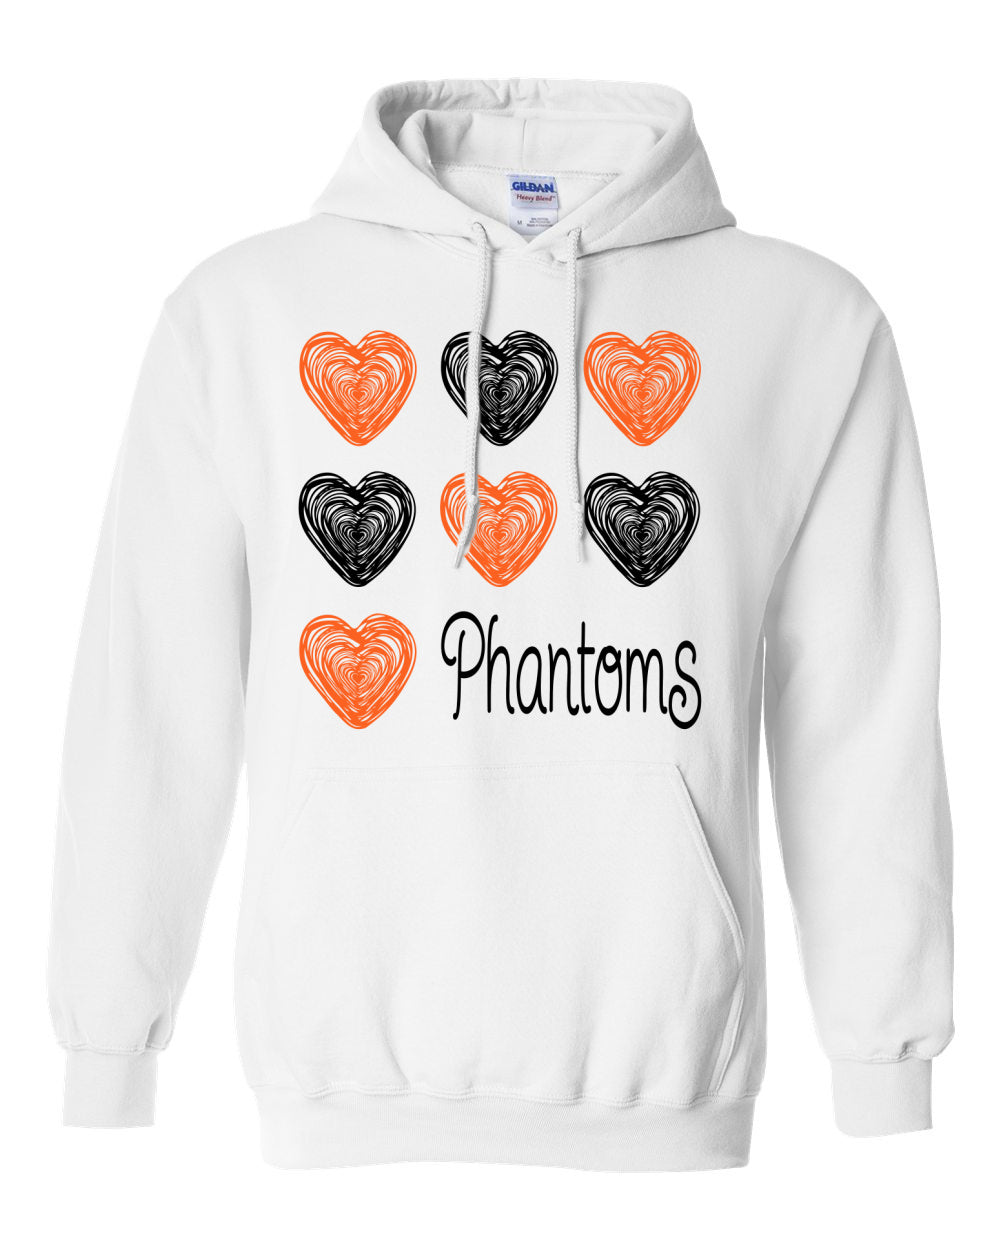 West De Pere Phantoms Merch - Hoodie Sweatshirt - Doodle Hearts